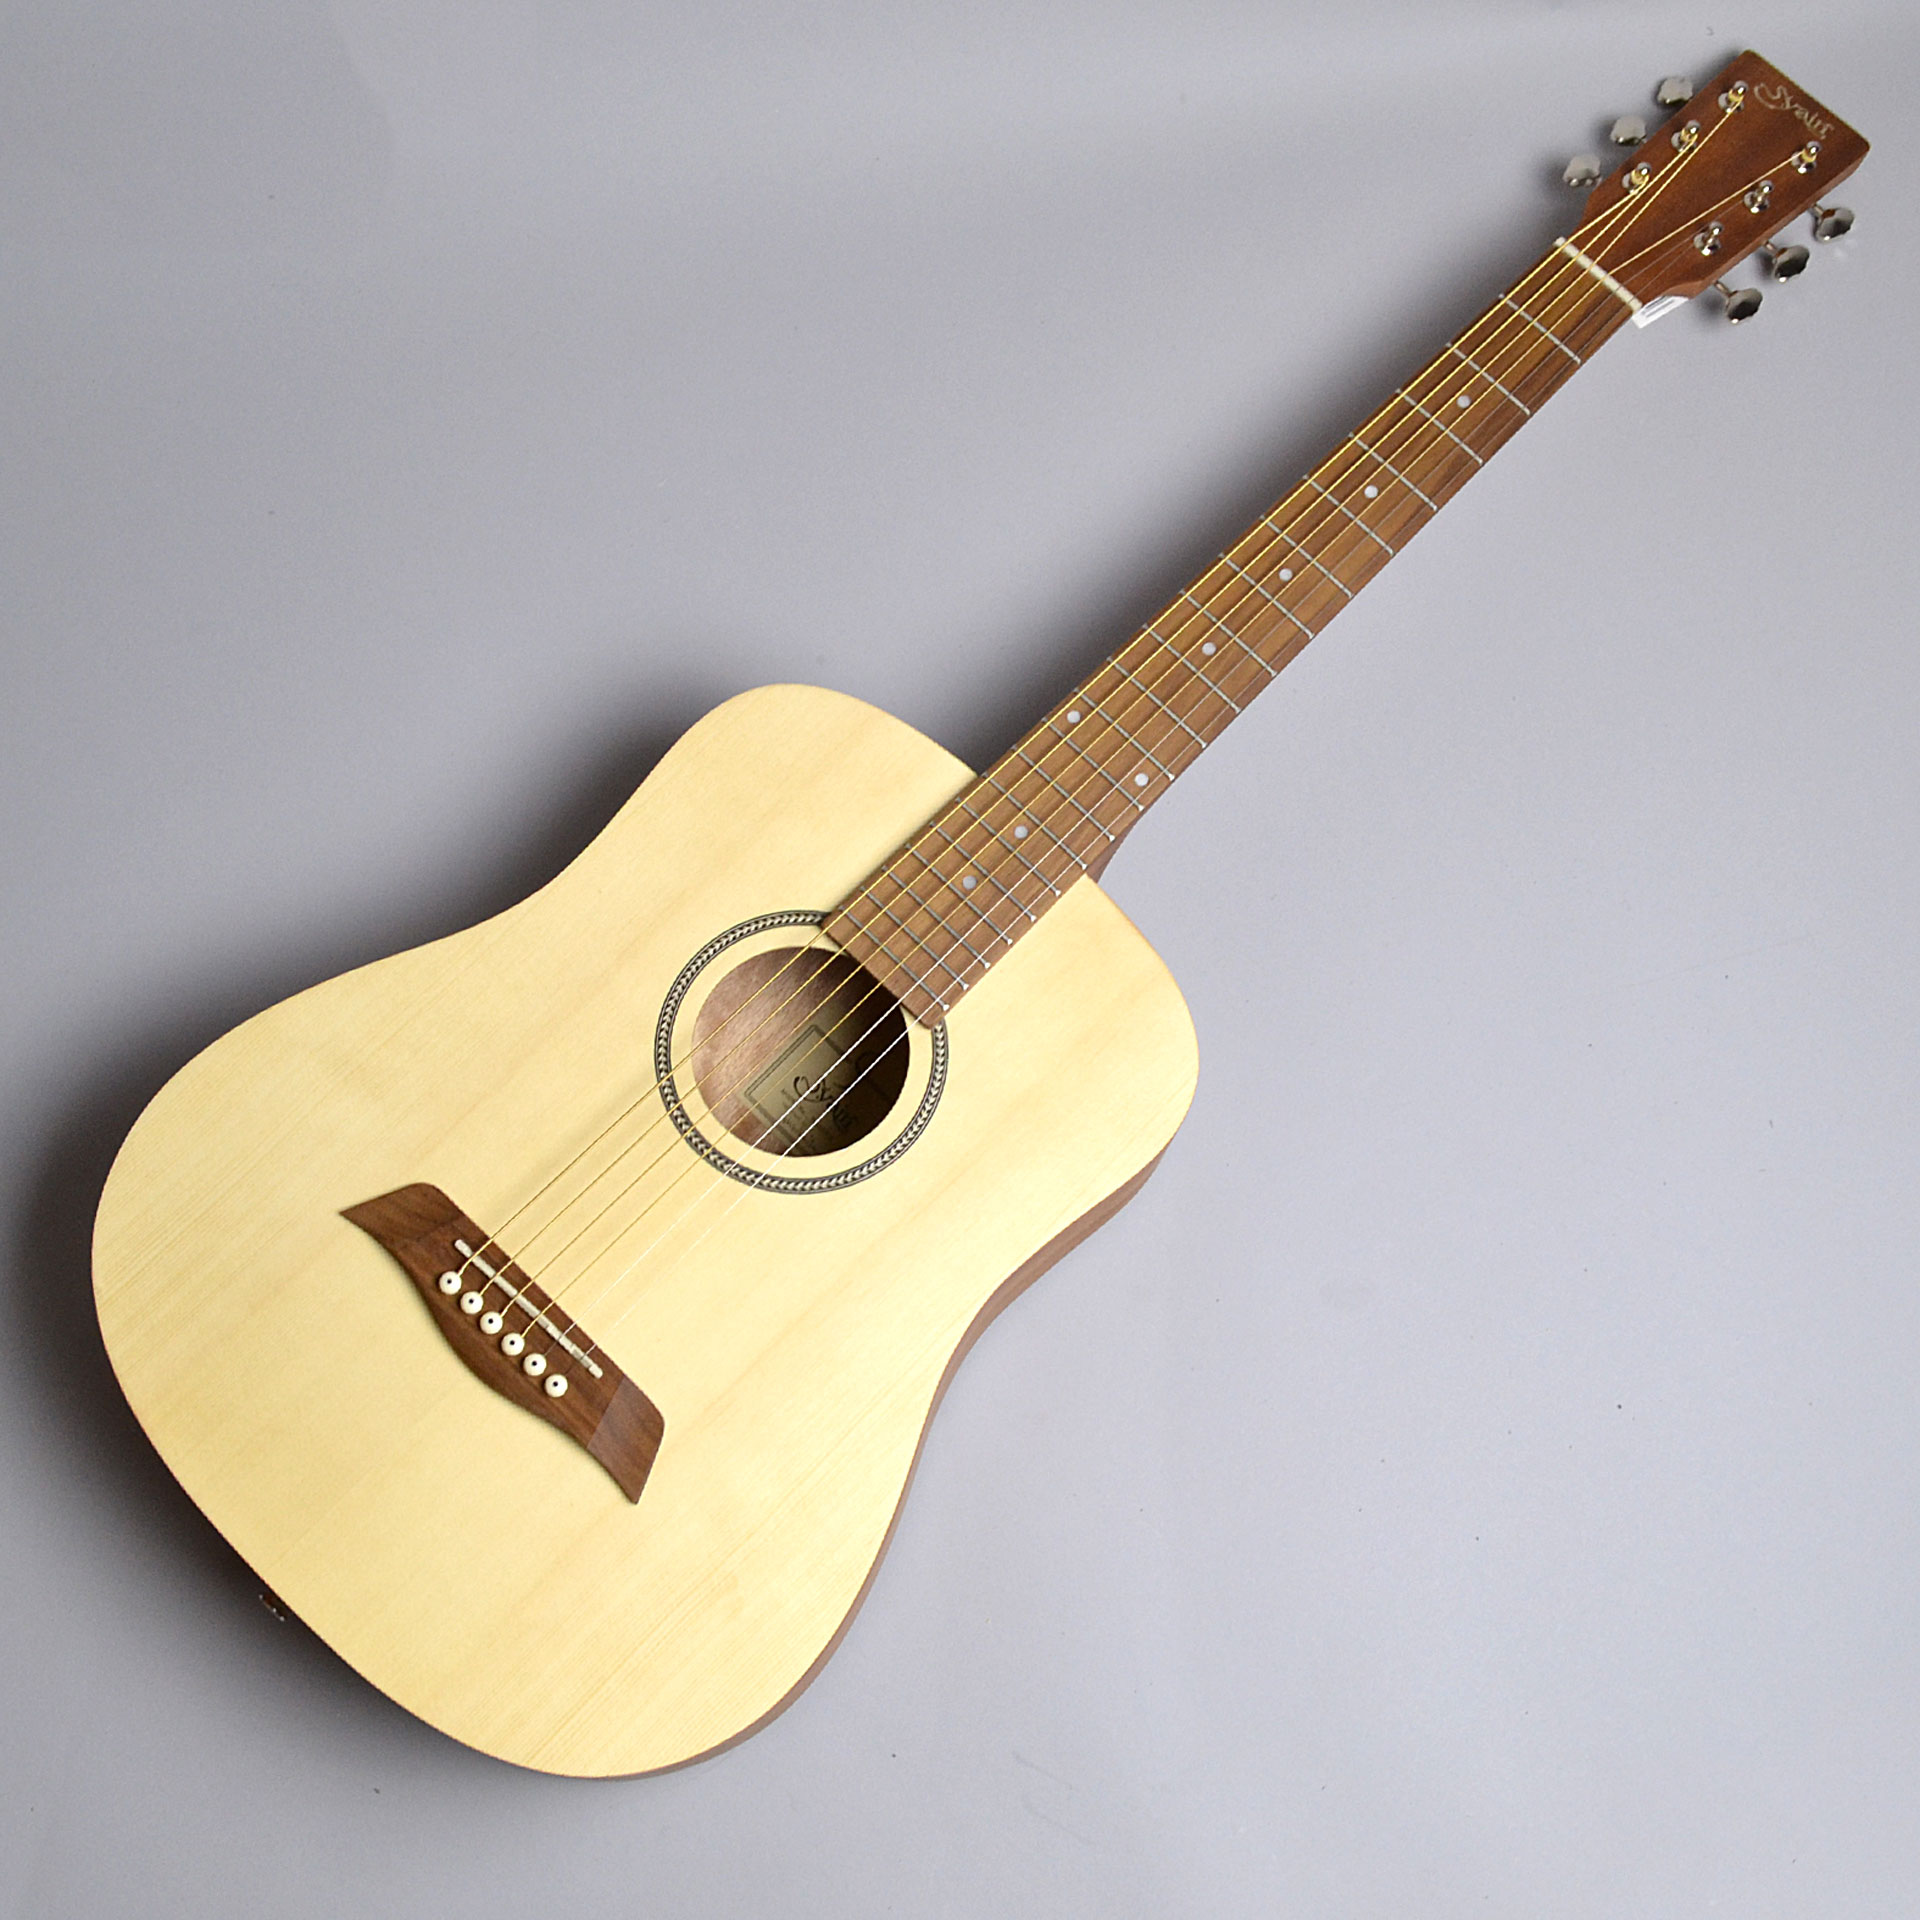 ミニギター おしゃれでカワイイミニギターをご紹介します 郡山アティ店 店舗情報 島村楽器